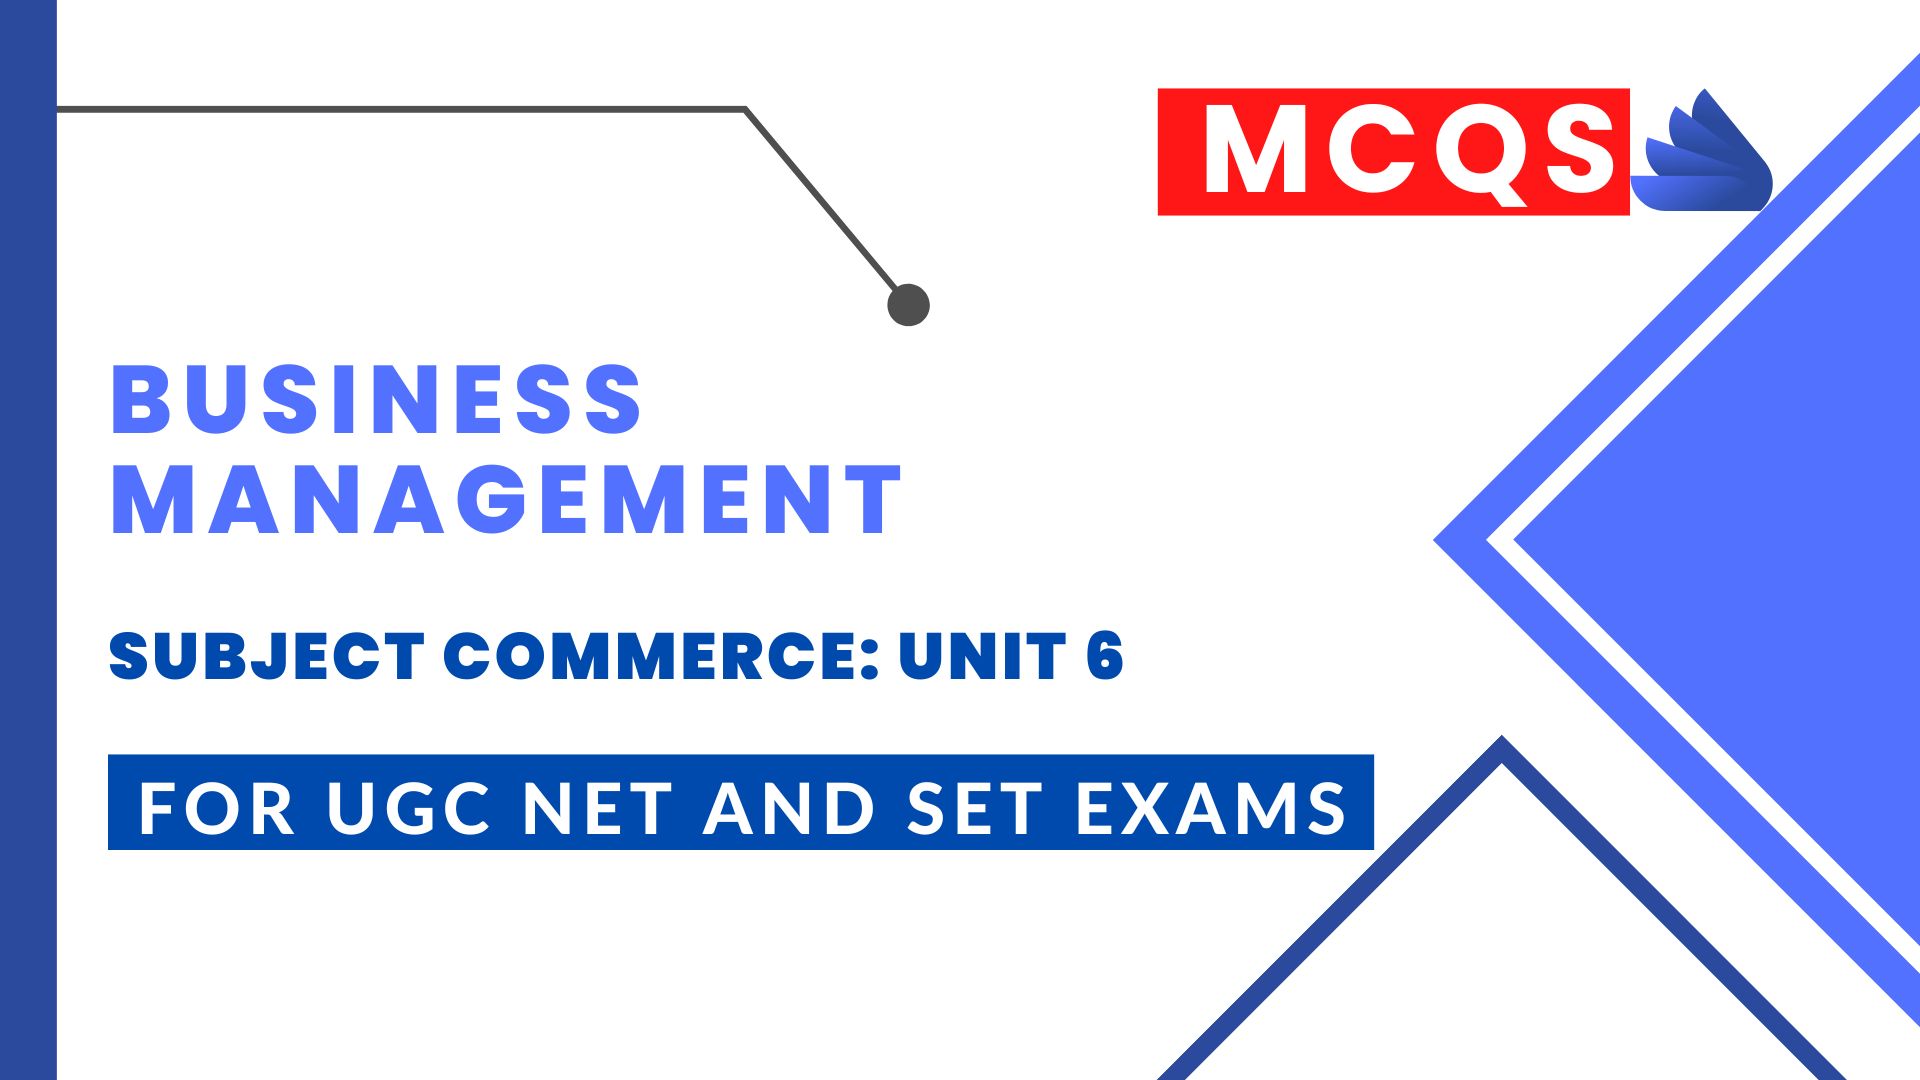 business management mcqs